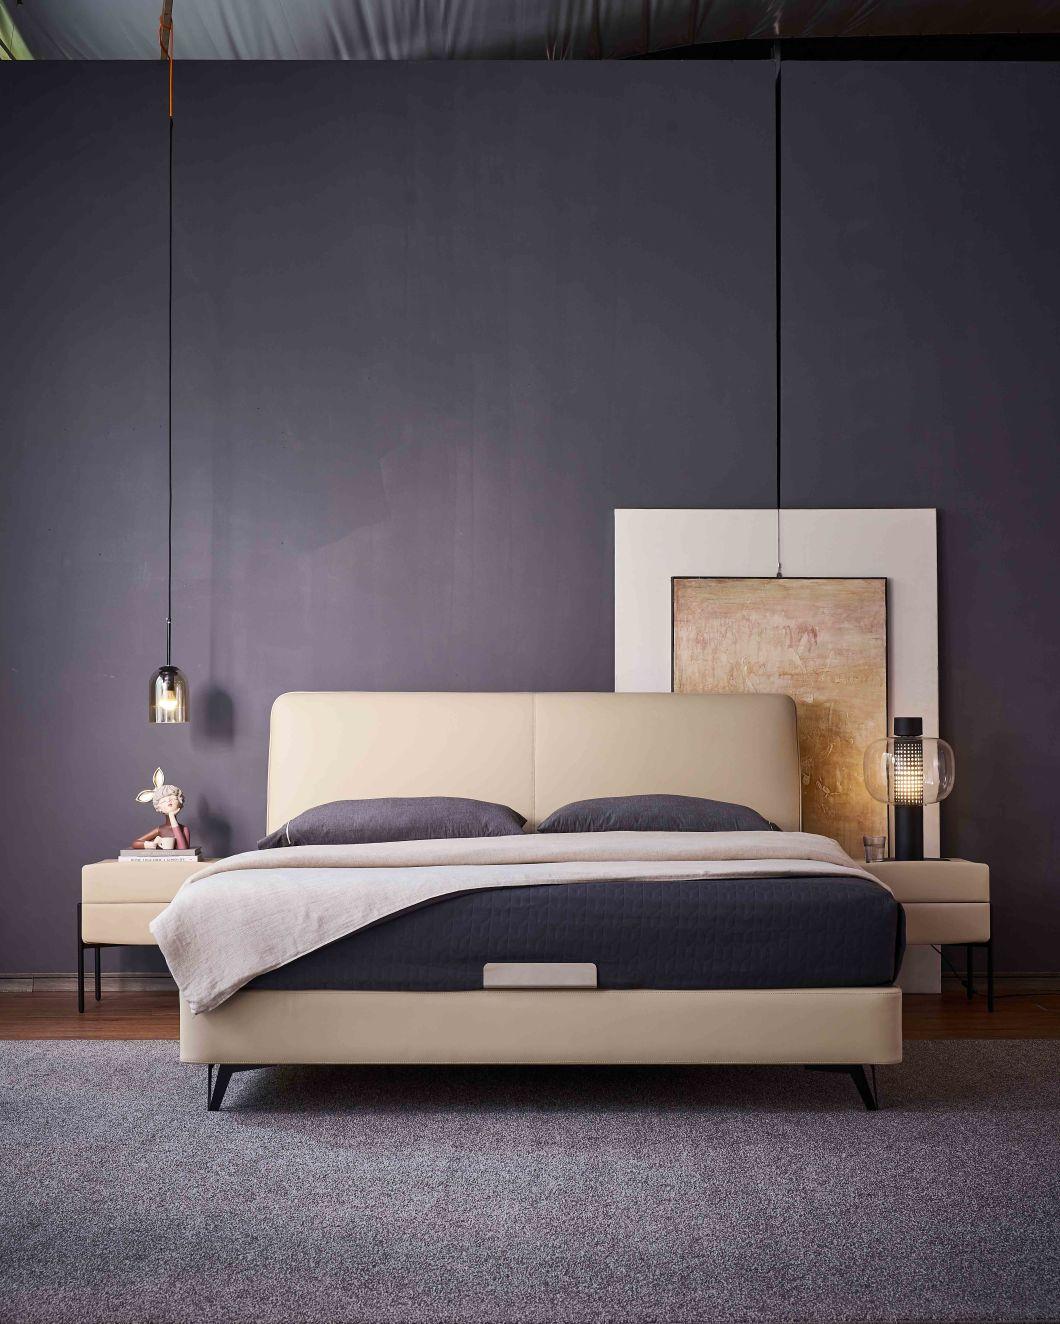 Modern Home Furniture Bedroom Bed Bedroom Sets King Bed Leather Beds a-Mf002